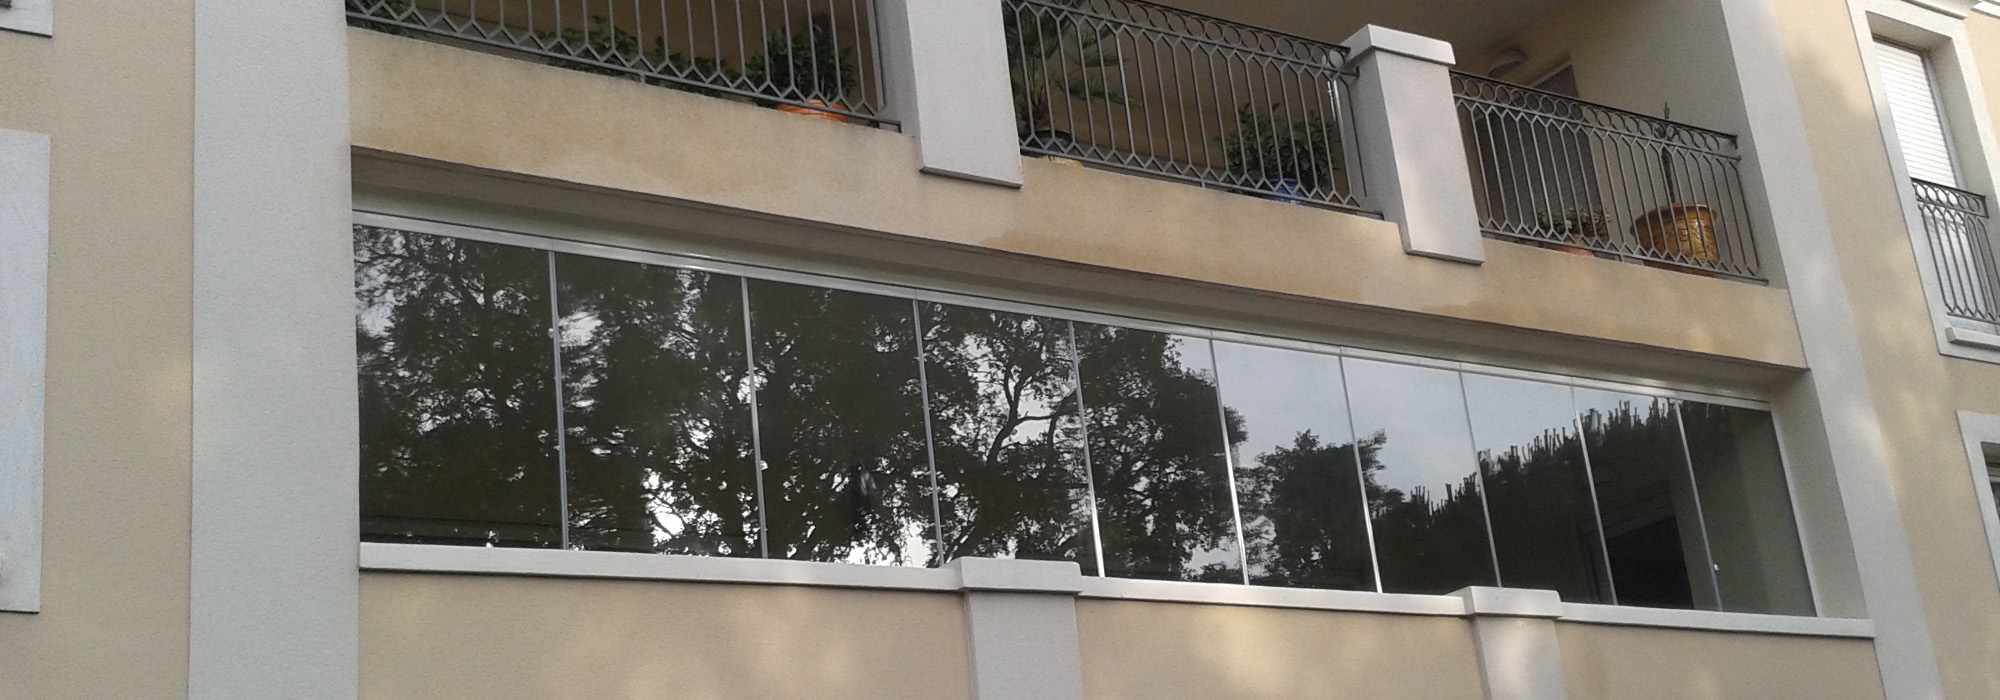 Installer une fermeture en verre sur un balcon de copropriété